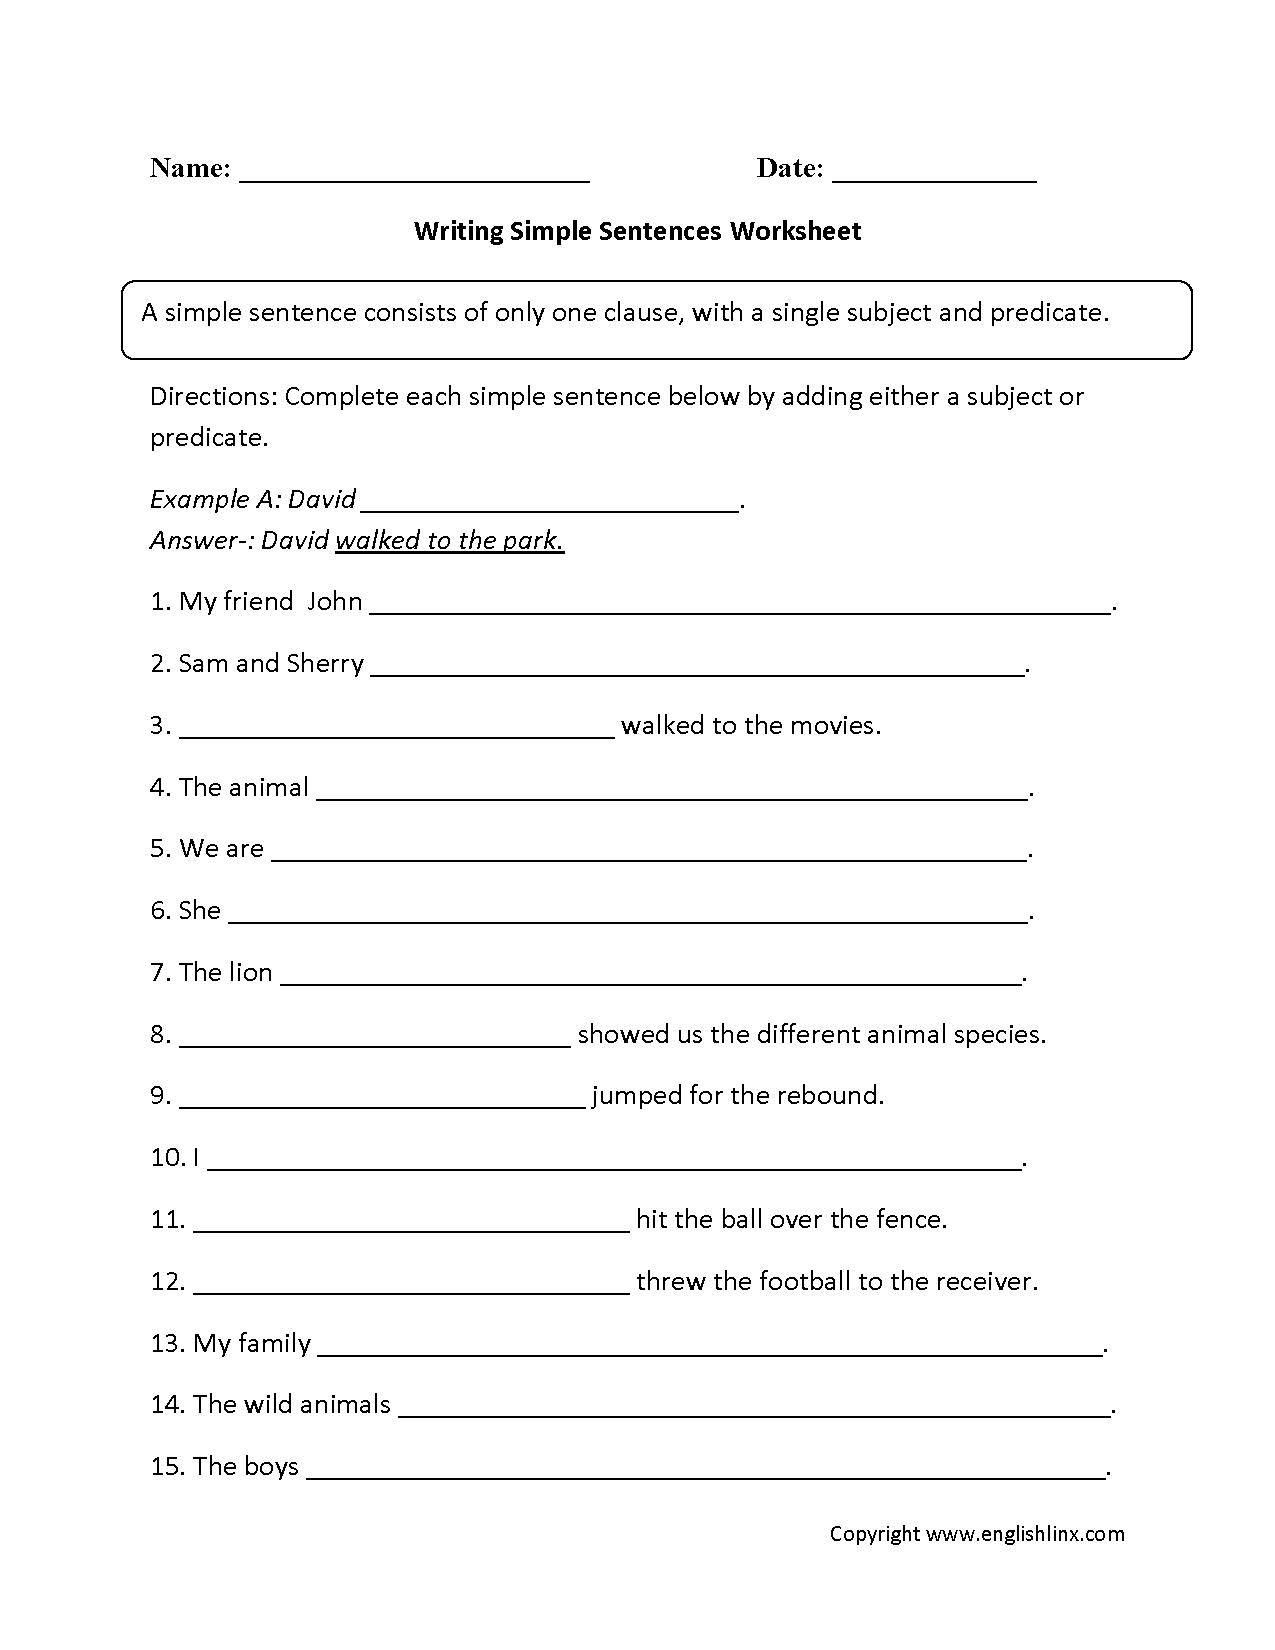 simple-sentences-worksheets-word-order-simple-sentences-worksheet-part-1